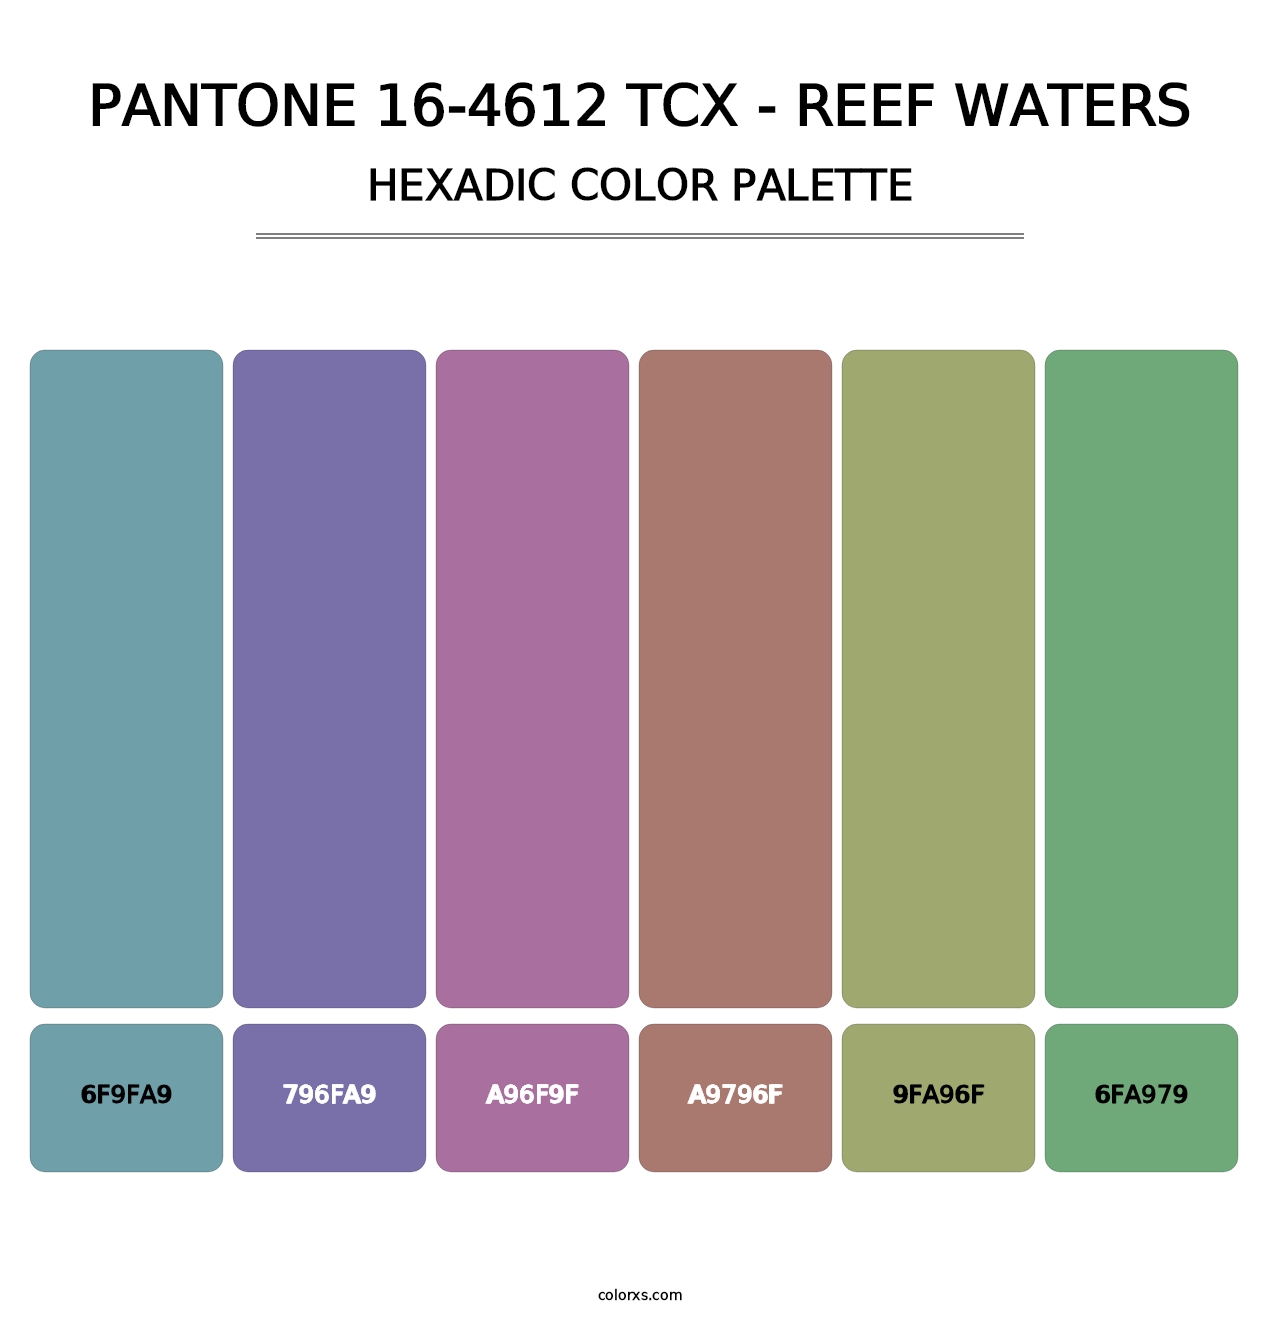 PANTONE 16-4612 TCX - Reef Waters - Hexadic Color Palette